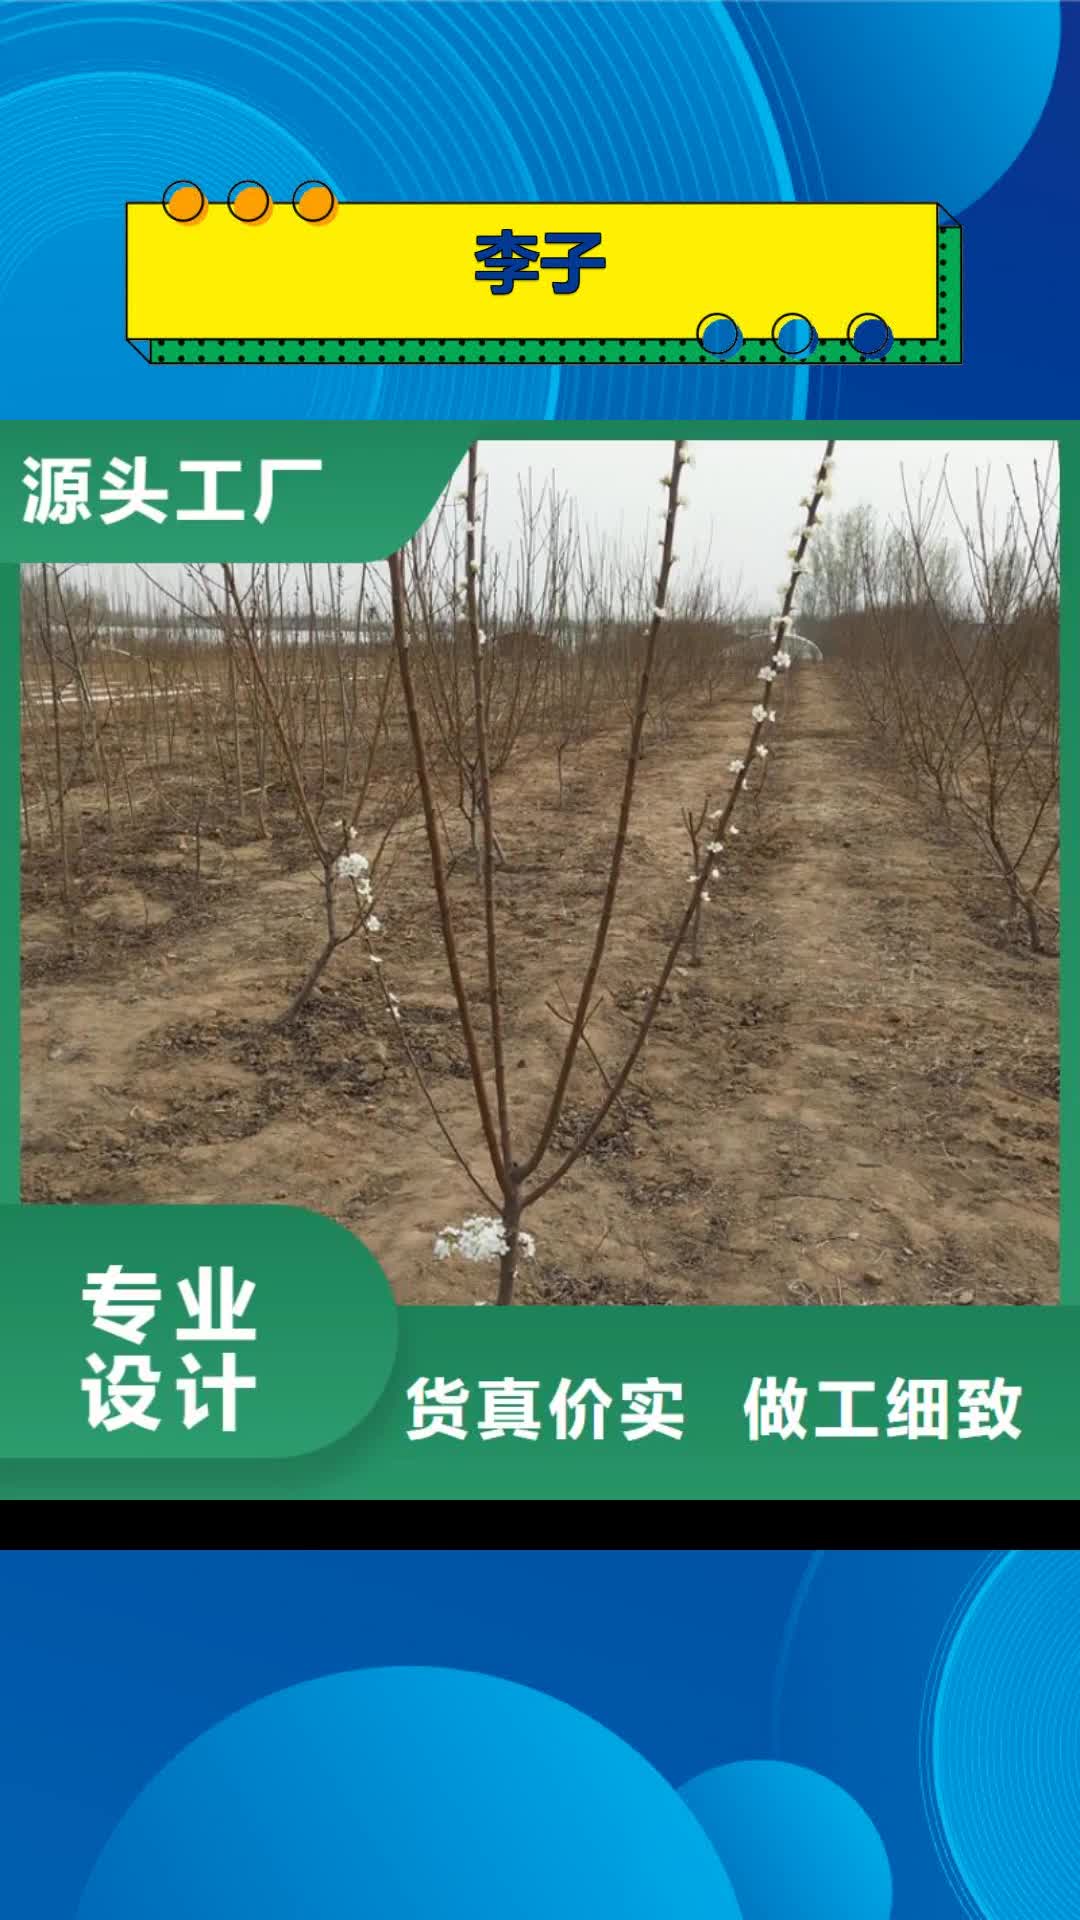 丹东【李子】 苹果苗厂家批发价